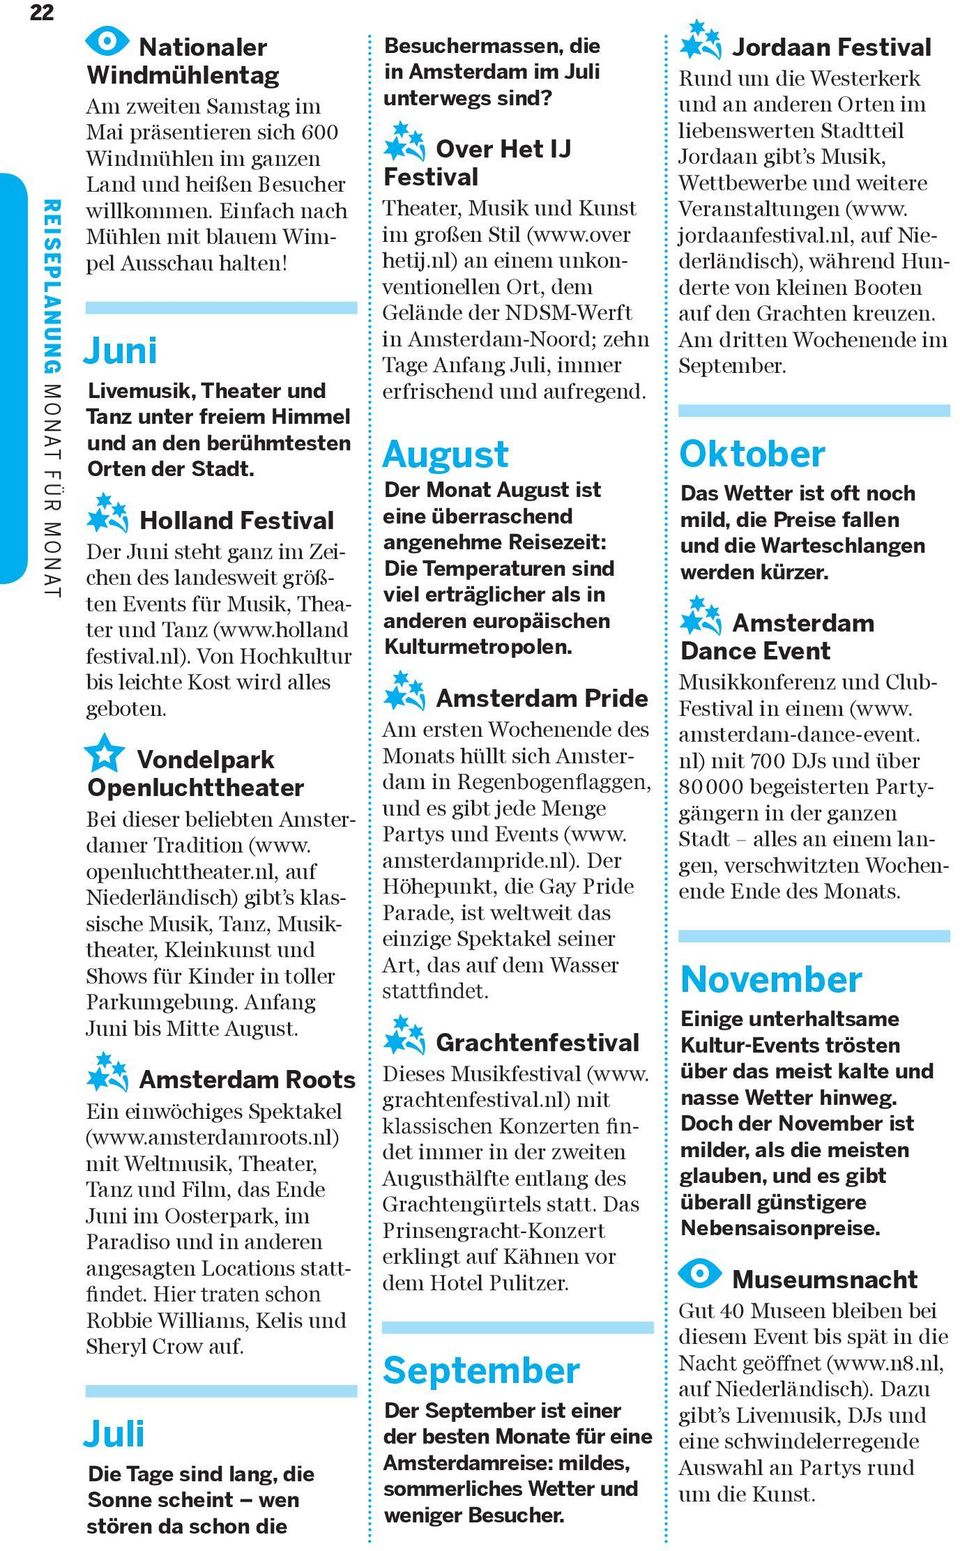 z Holland Festival Der Juni steht ganz im Zeichen des landesweit größten Events für Musik, Theater und Tanz (www.holland festival.nl). Von Hochkultur bis leichte Kost wird alles geboten.